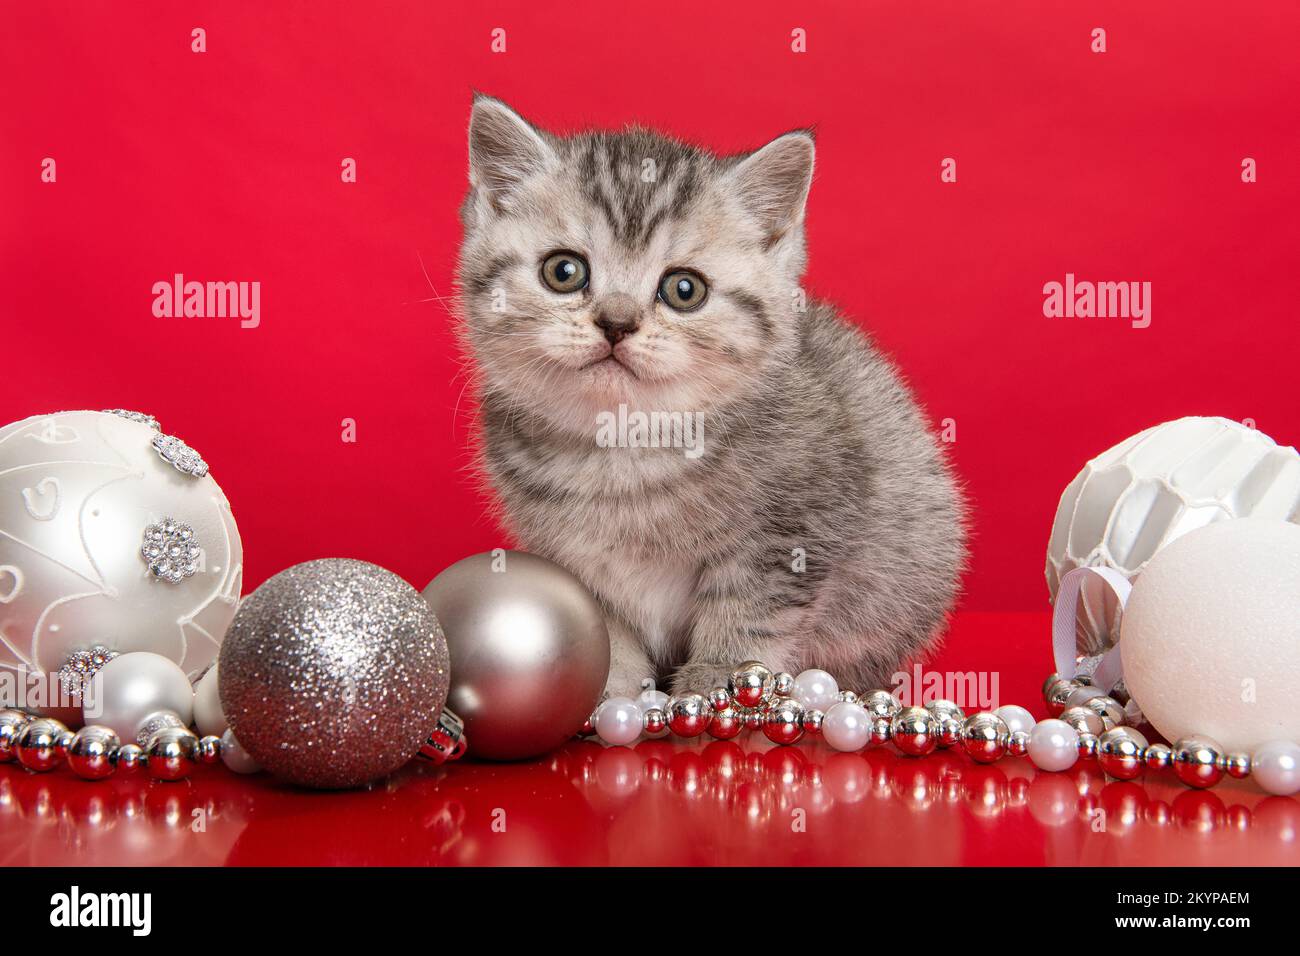 Süße graue englische Babykatze mit Kurzhaar, die in einem weißen Korb mit chirstmas-Ornamenten auf rotem Hintergrund in die Kamera schaut Stockfoto